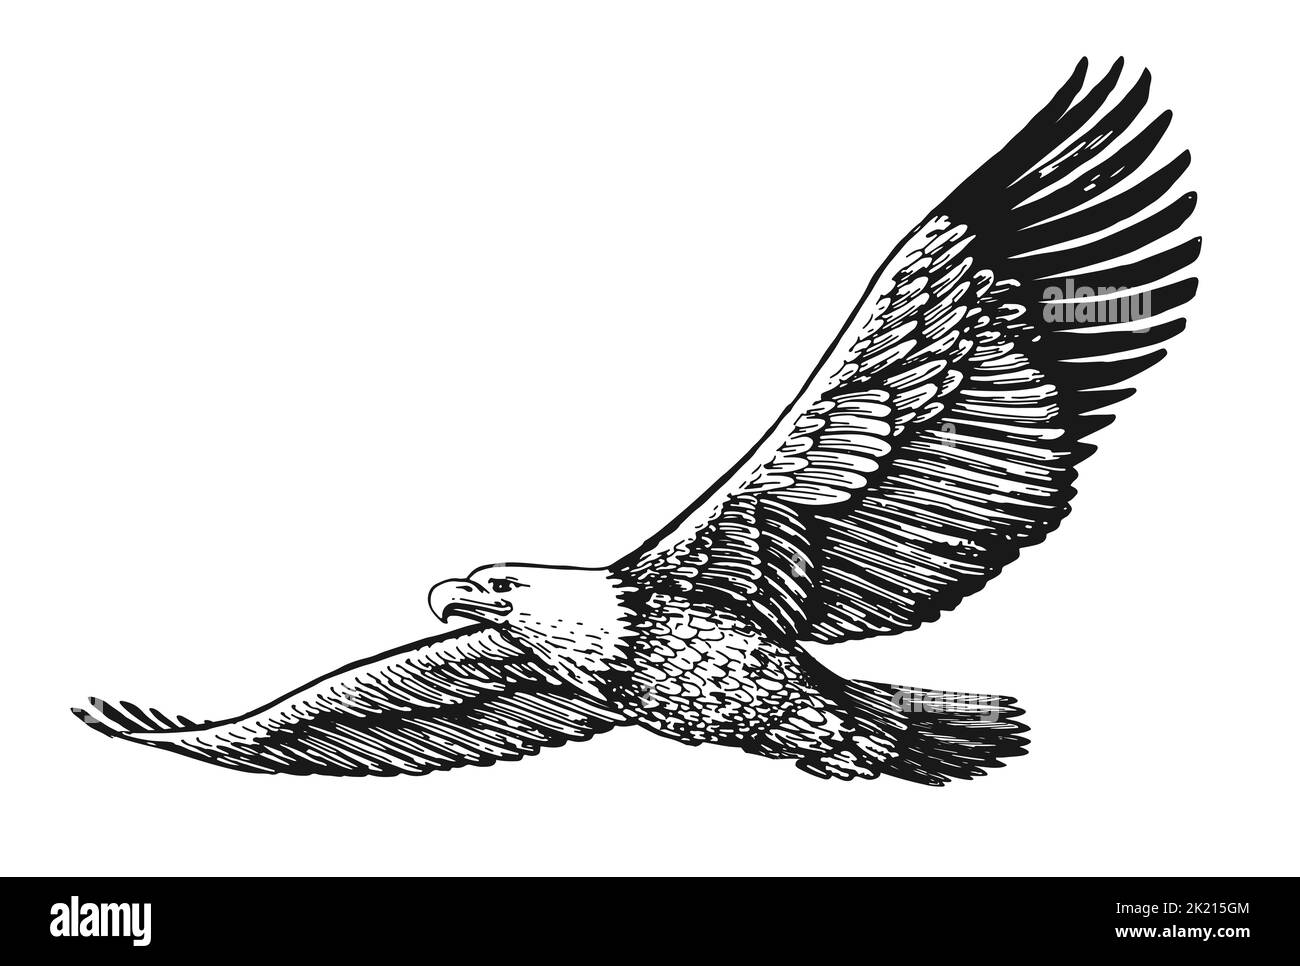 WEISSKOPFSEEADLER mit ausgebreiteten Flügeln im Flug isoliert auf Weiß. Handgezeichnete Skizze Vogel Illustration in Vintage Gravur Stil Stockfoto